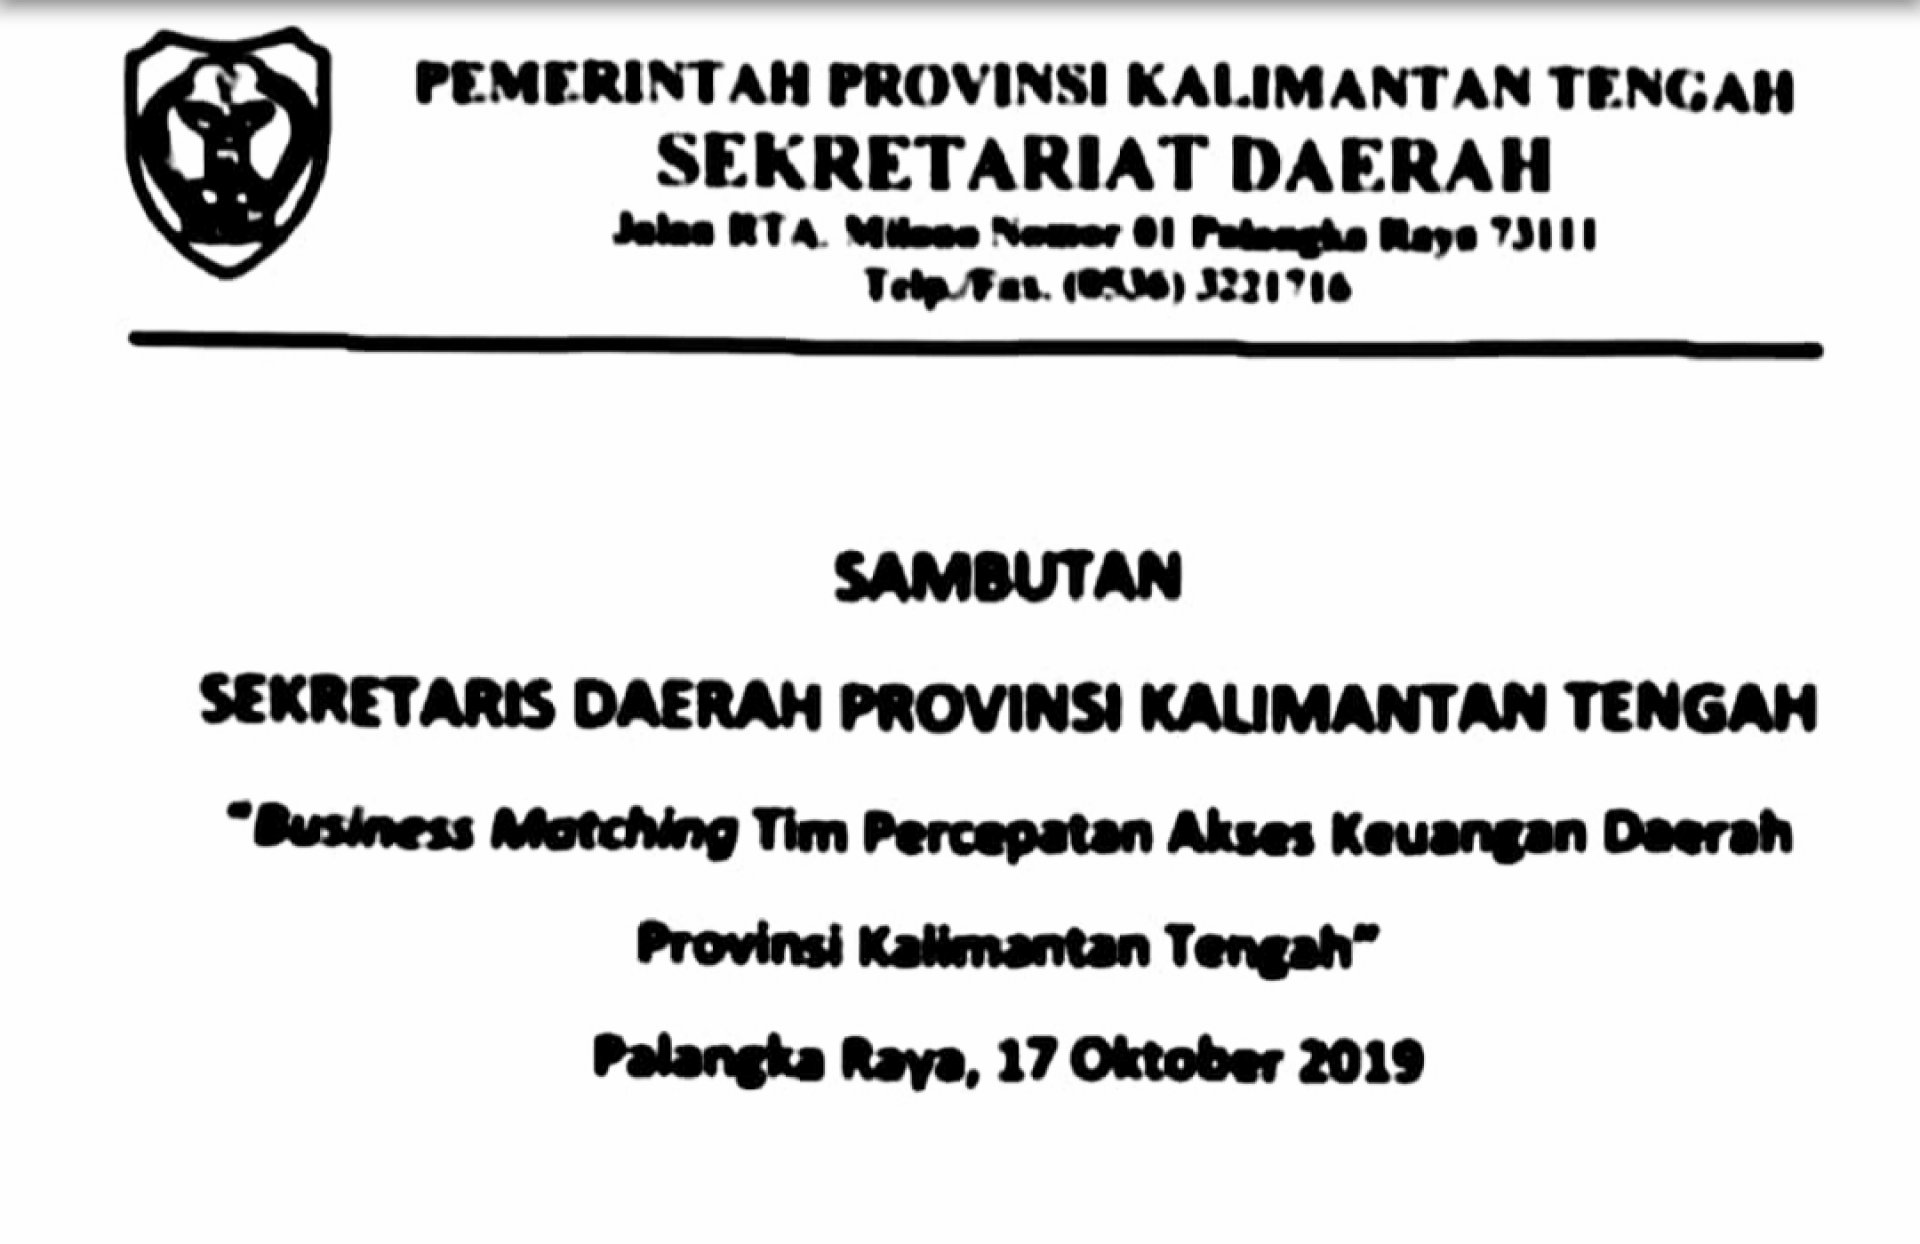 Sambutan Sekretaris Daerah Provinsi Kalimantan Tengah pada Acara Business Meeting Tim Percepatan Akses Keuangan Daerah